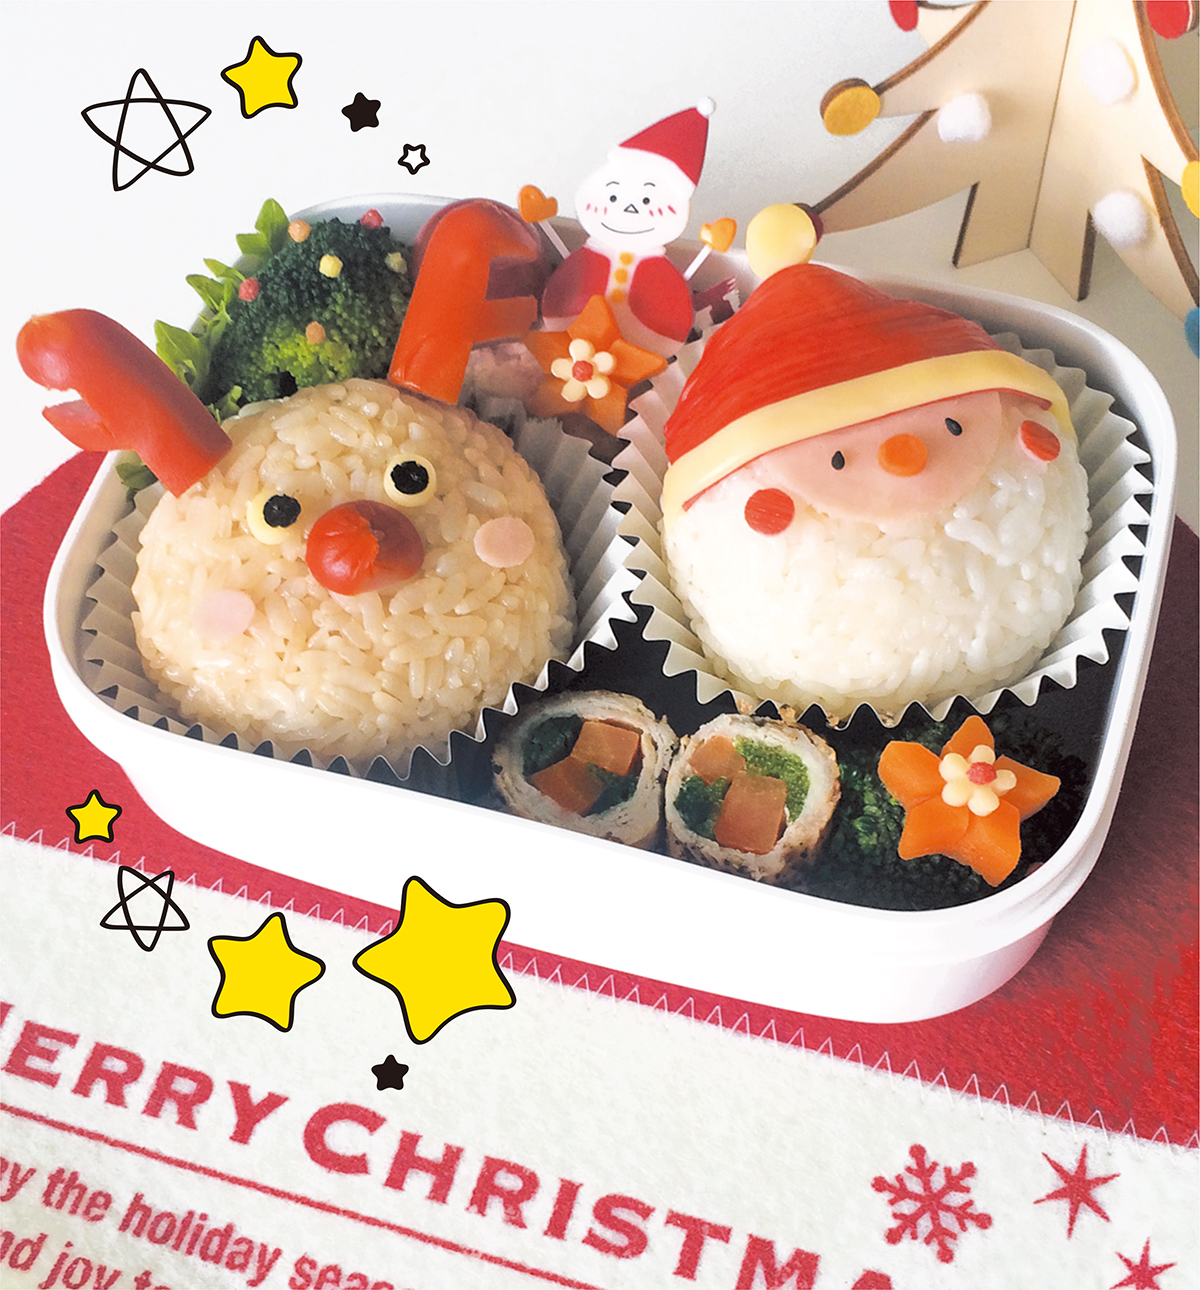 第13回 クリスマスキャラ弁 キャラフードで家族を笑顔に 北海道新聞 旭川支社 ななかまど